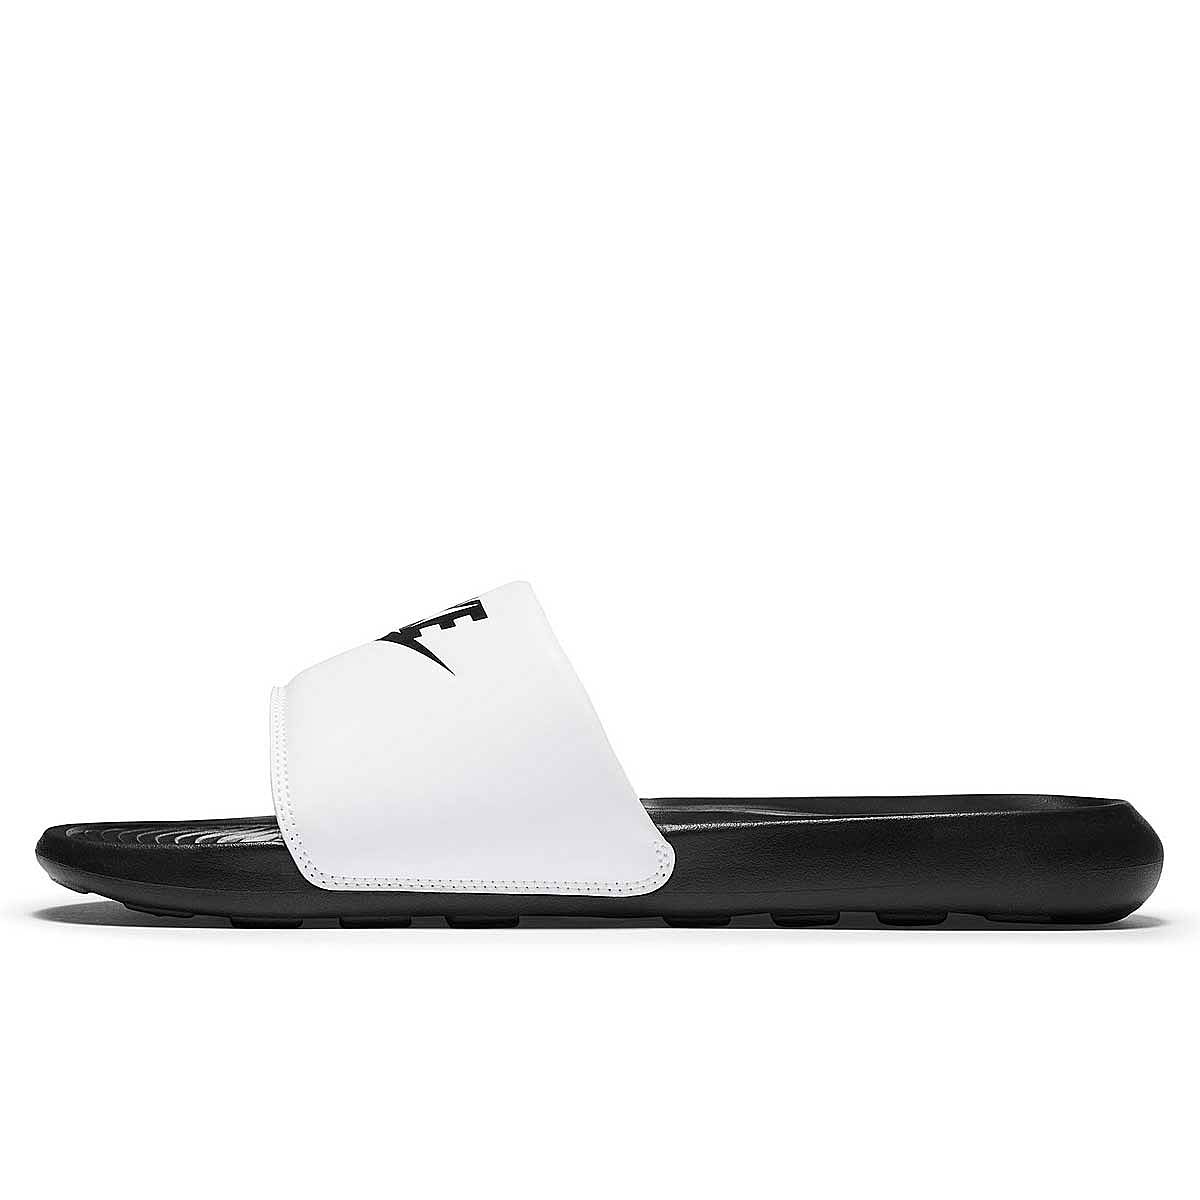 Nike Victori One Slide, Schwarz/schwarz-weiß EU50 1/2